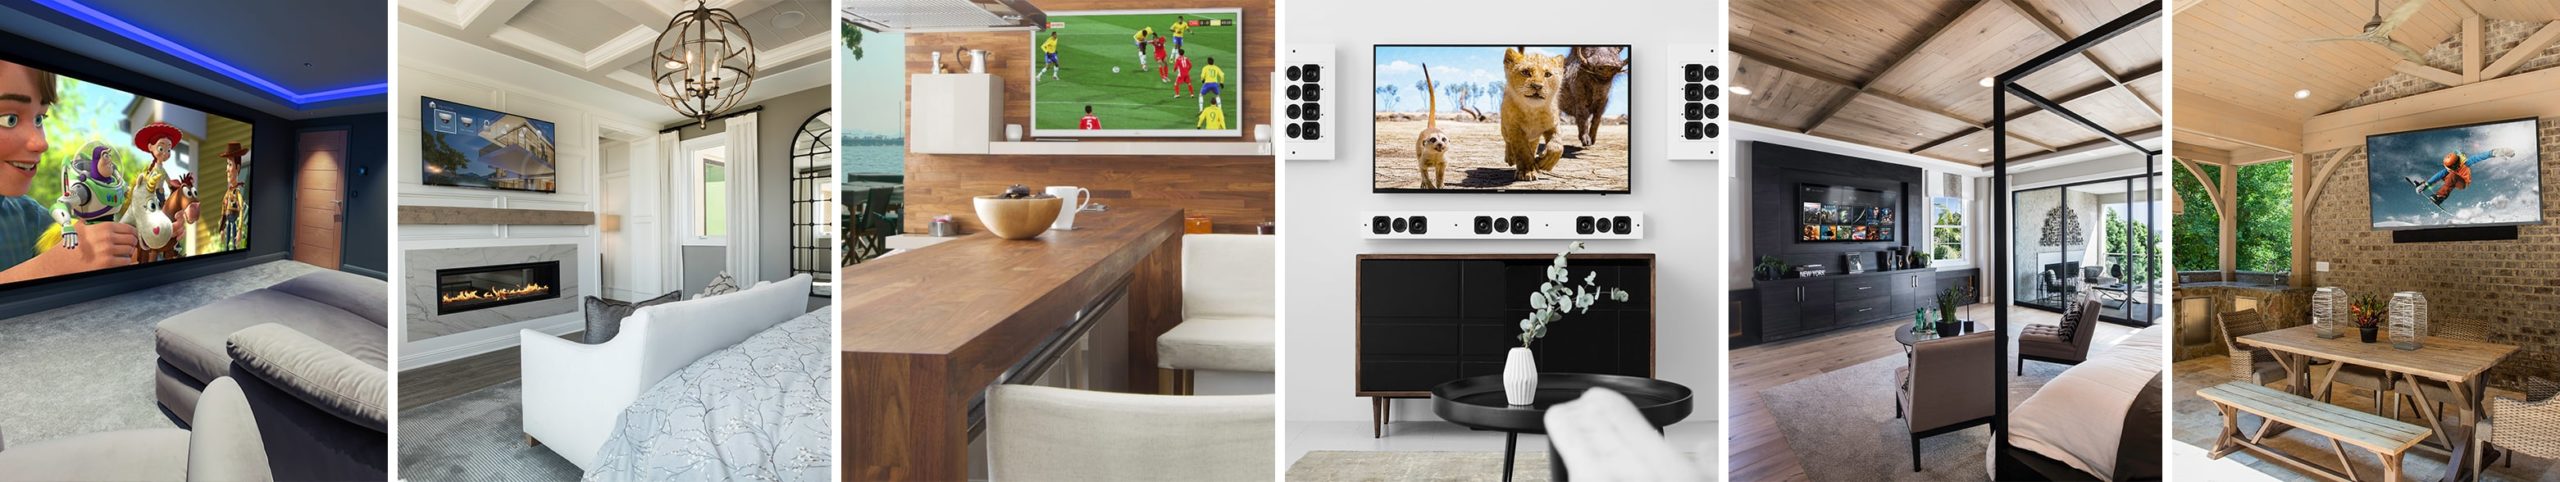 Smart video - internal and external tv